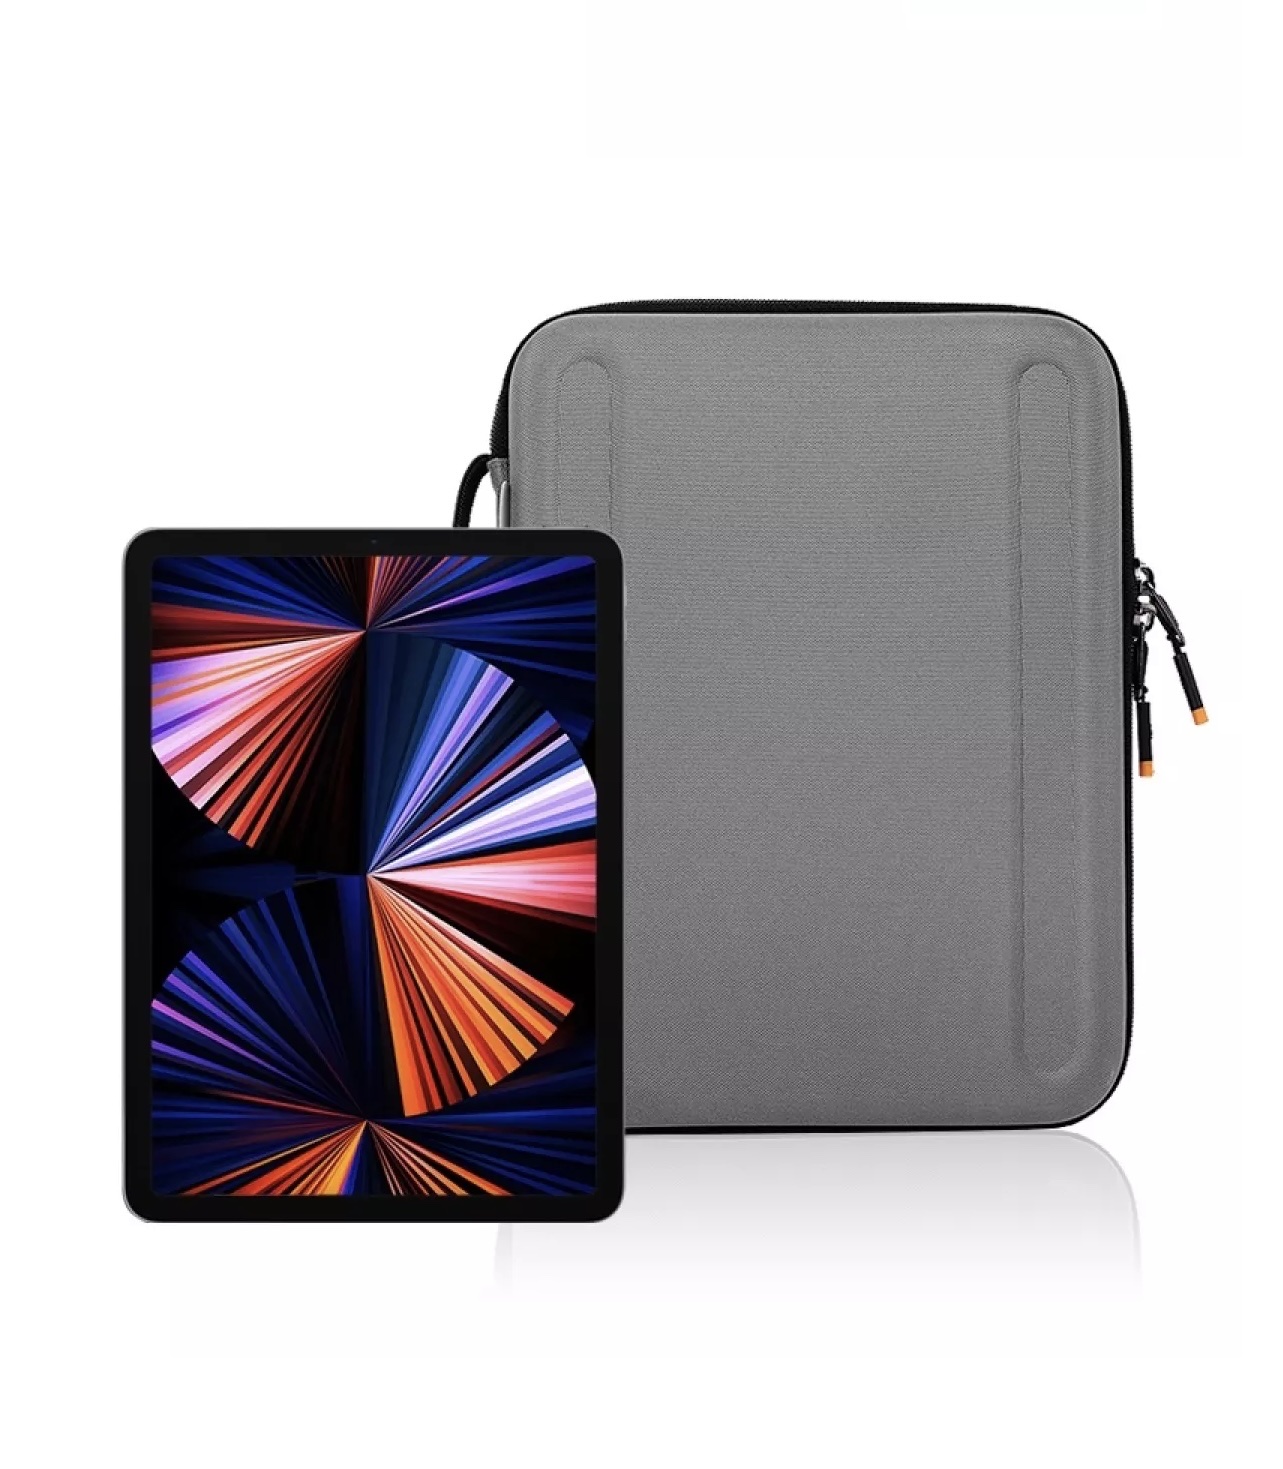 Túi Đeo Chống Va Đập WiWU Parallel Hardshell Bag Dành Cho Laptop Chiếc Hộp Đa Năng Đựng Macbook - Hàng Chính Hãng 